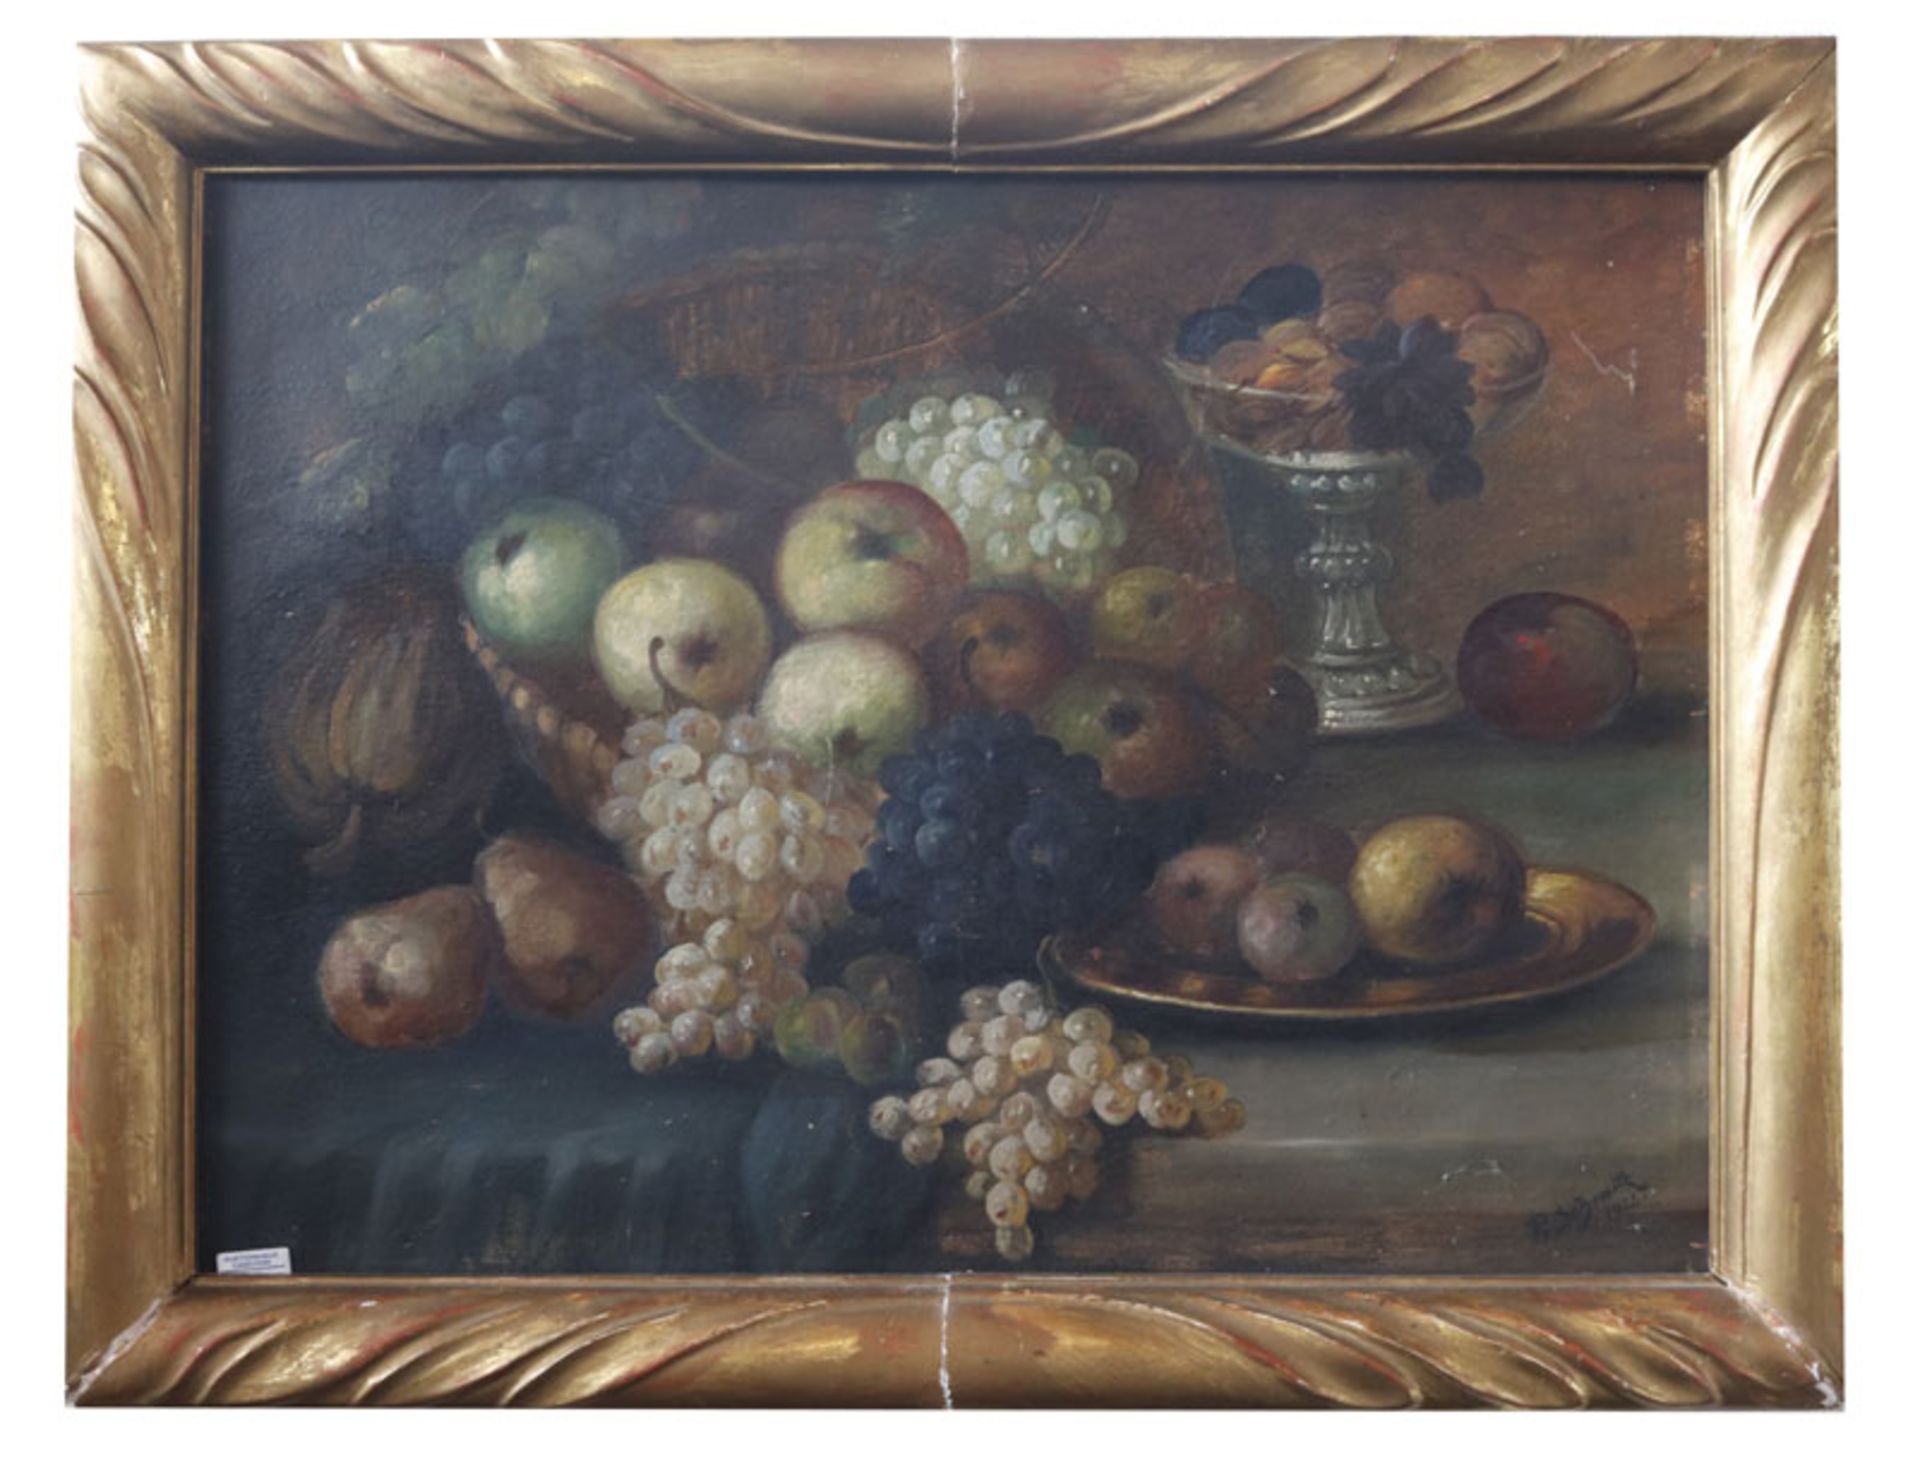 Gemälde ÖL/Malkarton 'Früchte-Stillleben', signiert P. Schmitz, 1922, gerahmt, Rahmen beschädigt,